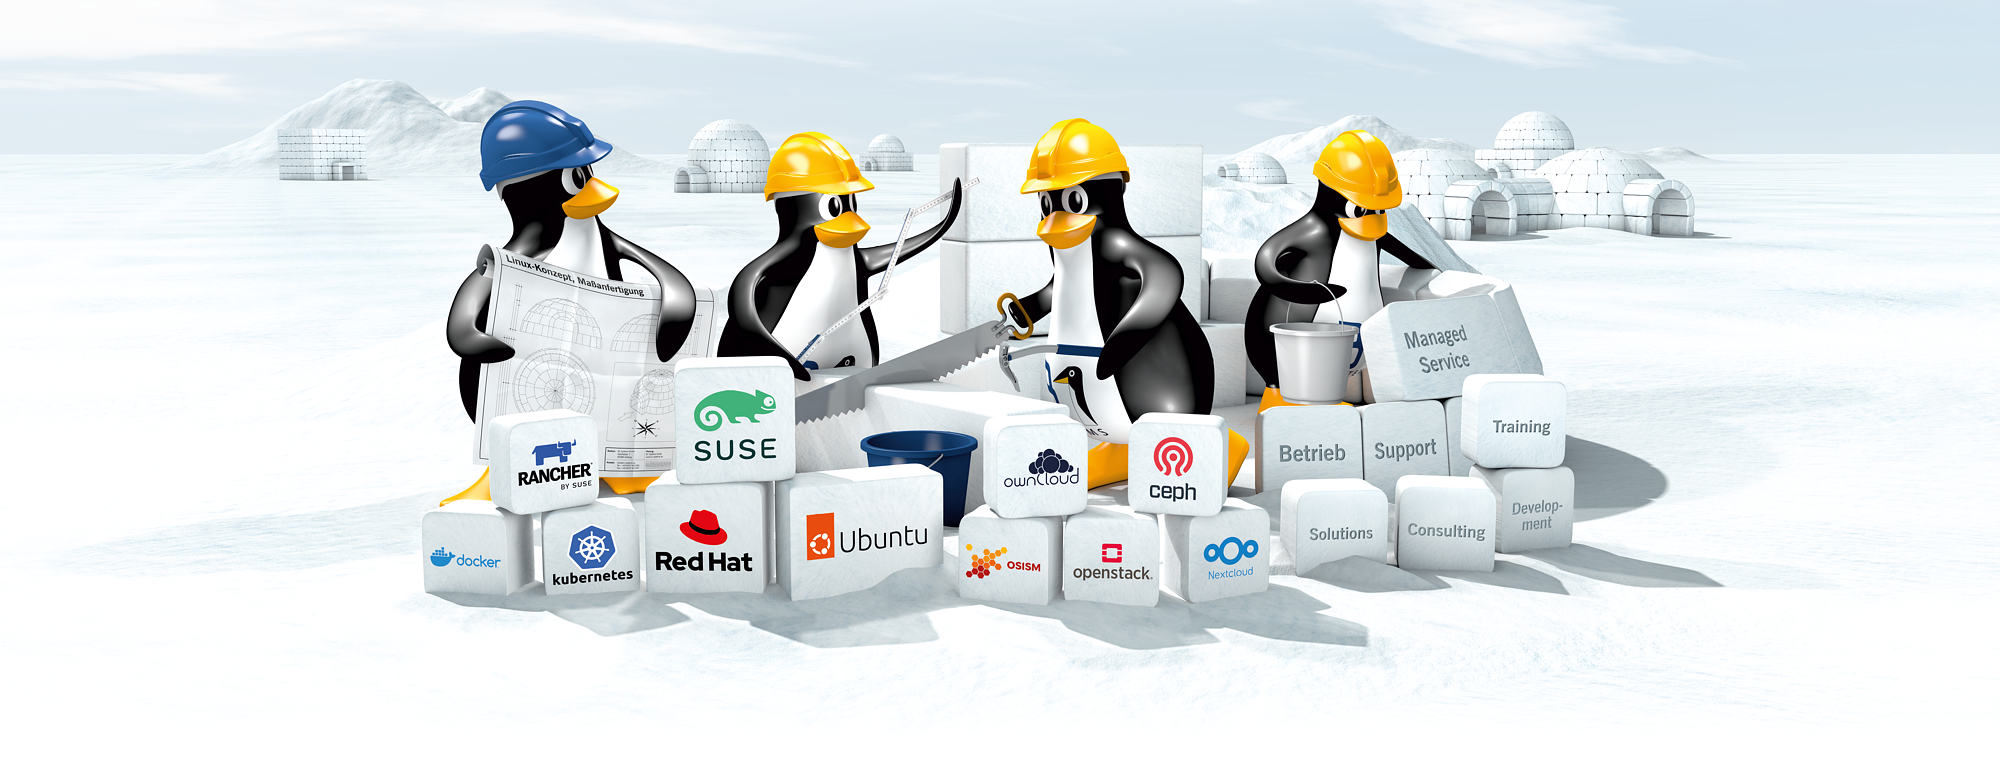 Vier im Cartoon Style gerenderte Pinguine mit diversen Werkzeugen und Bauarbeiterhelmen bauen aus einzelnen Eisblöcken ein Iglu auf. Logos von Open Source Technologien und Unternehmen sind auf den Eisblöcken abgebildet. Im Hintergrund stehen schon fertig aufgebaute Iglus in unterschiedlichen Formen und Größen.